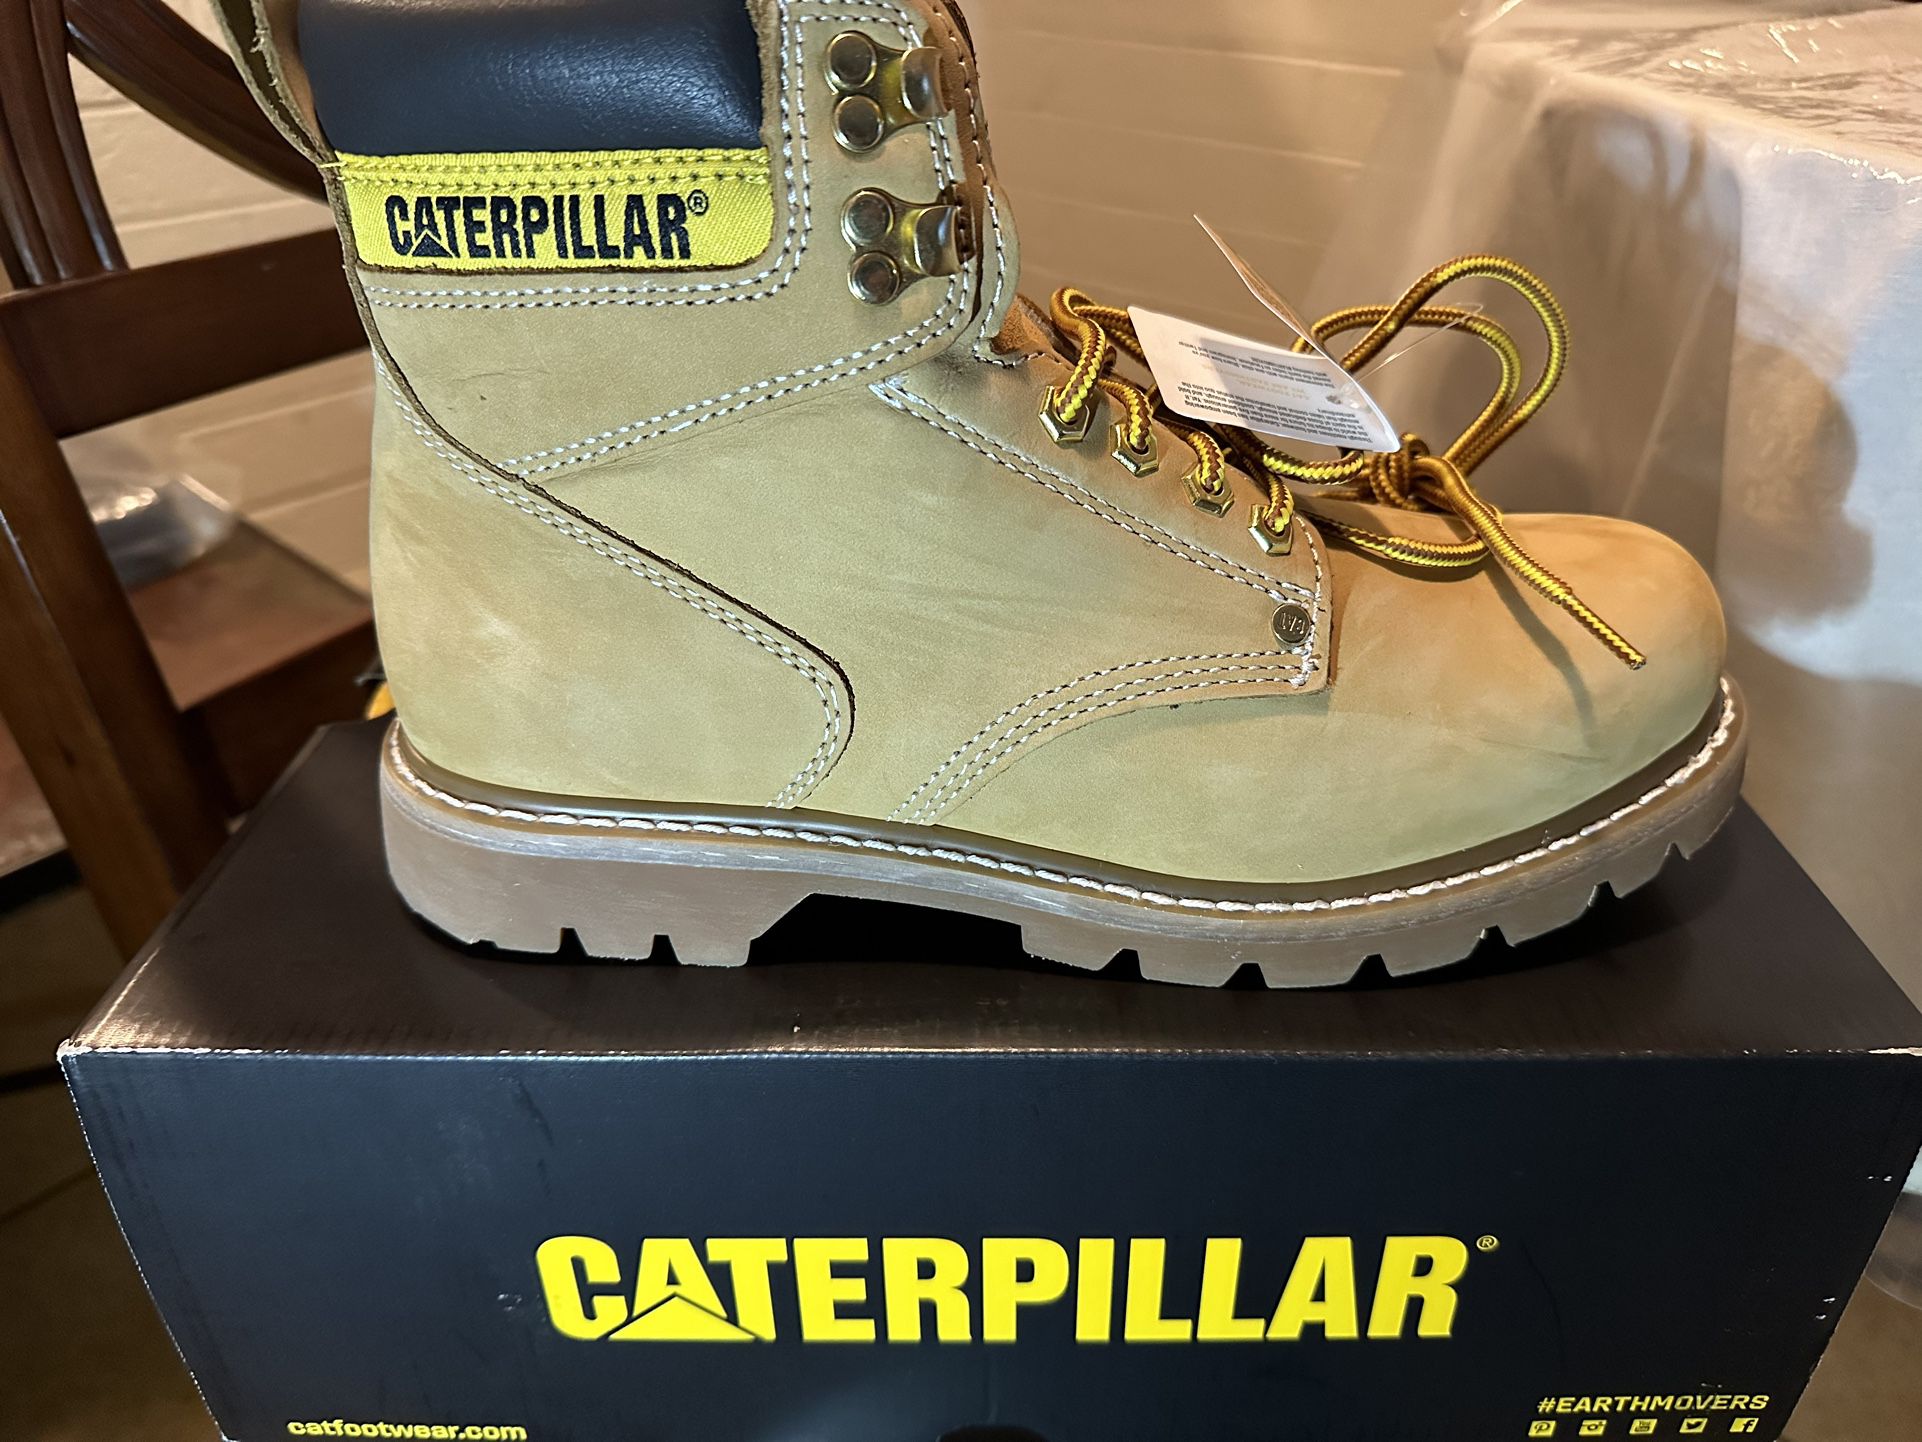 Cartepillar Boots 🥾 New